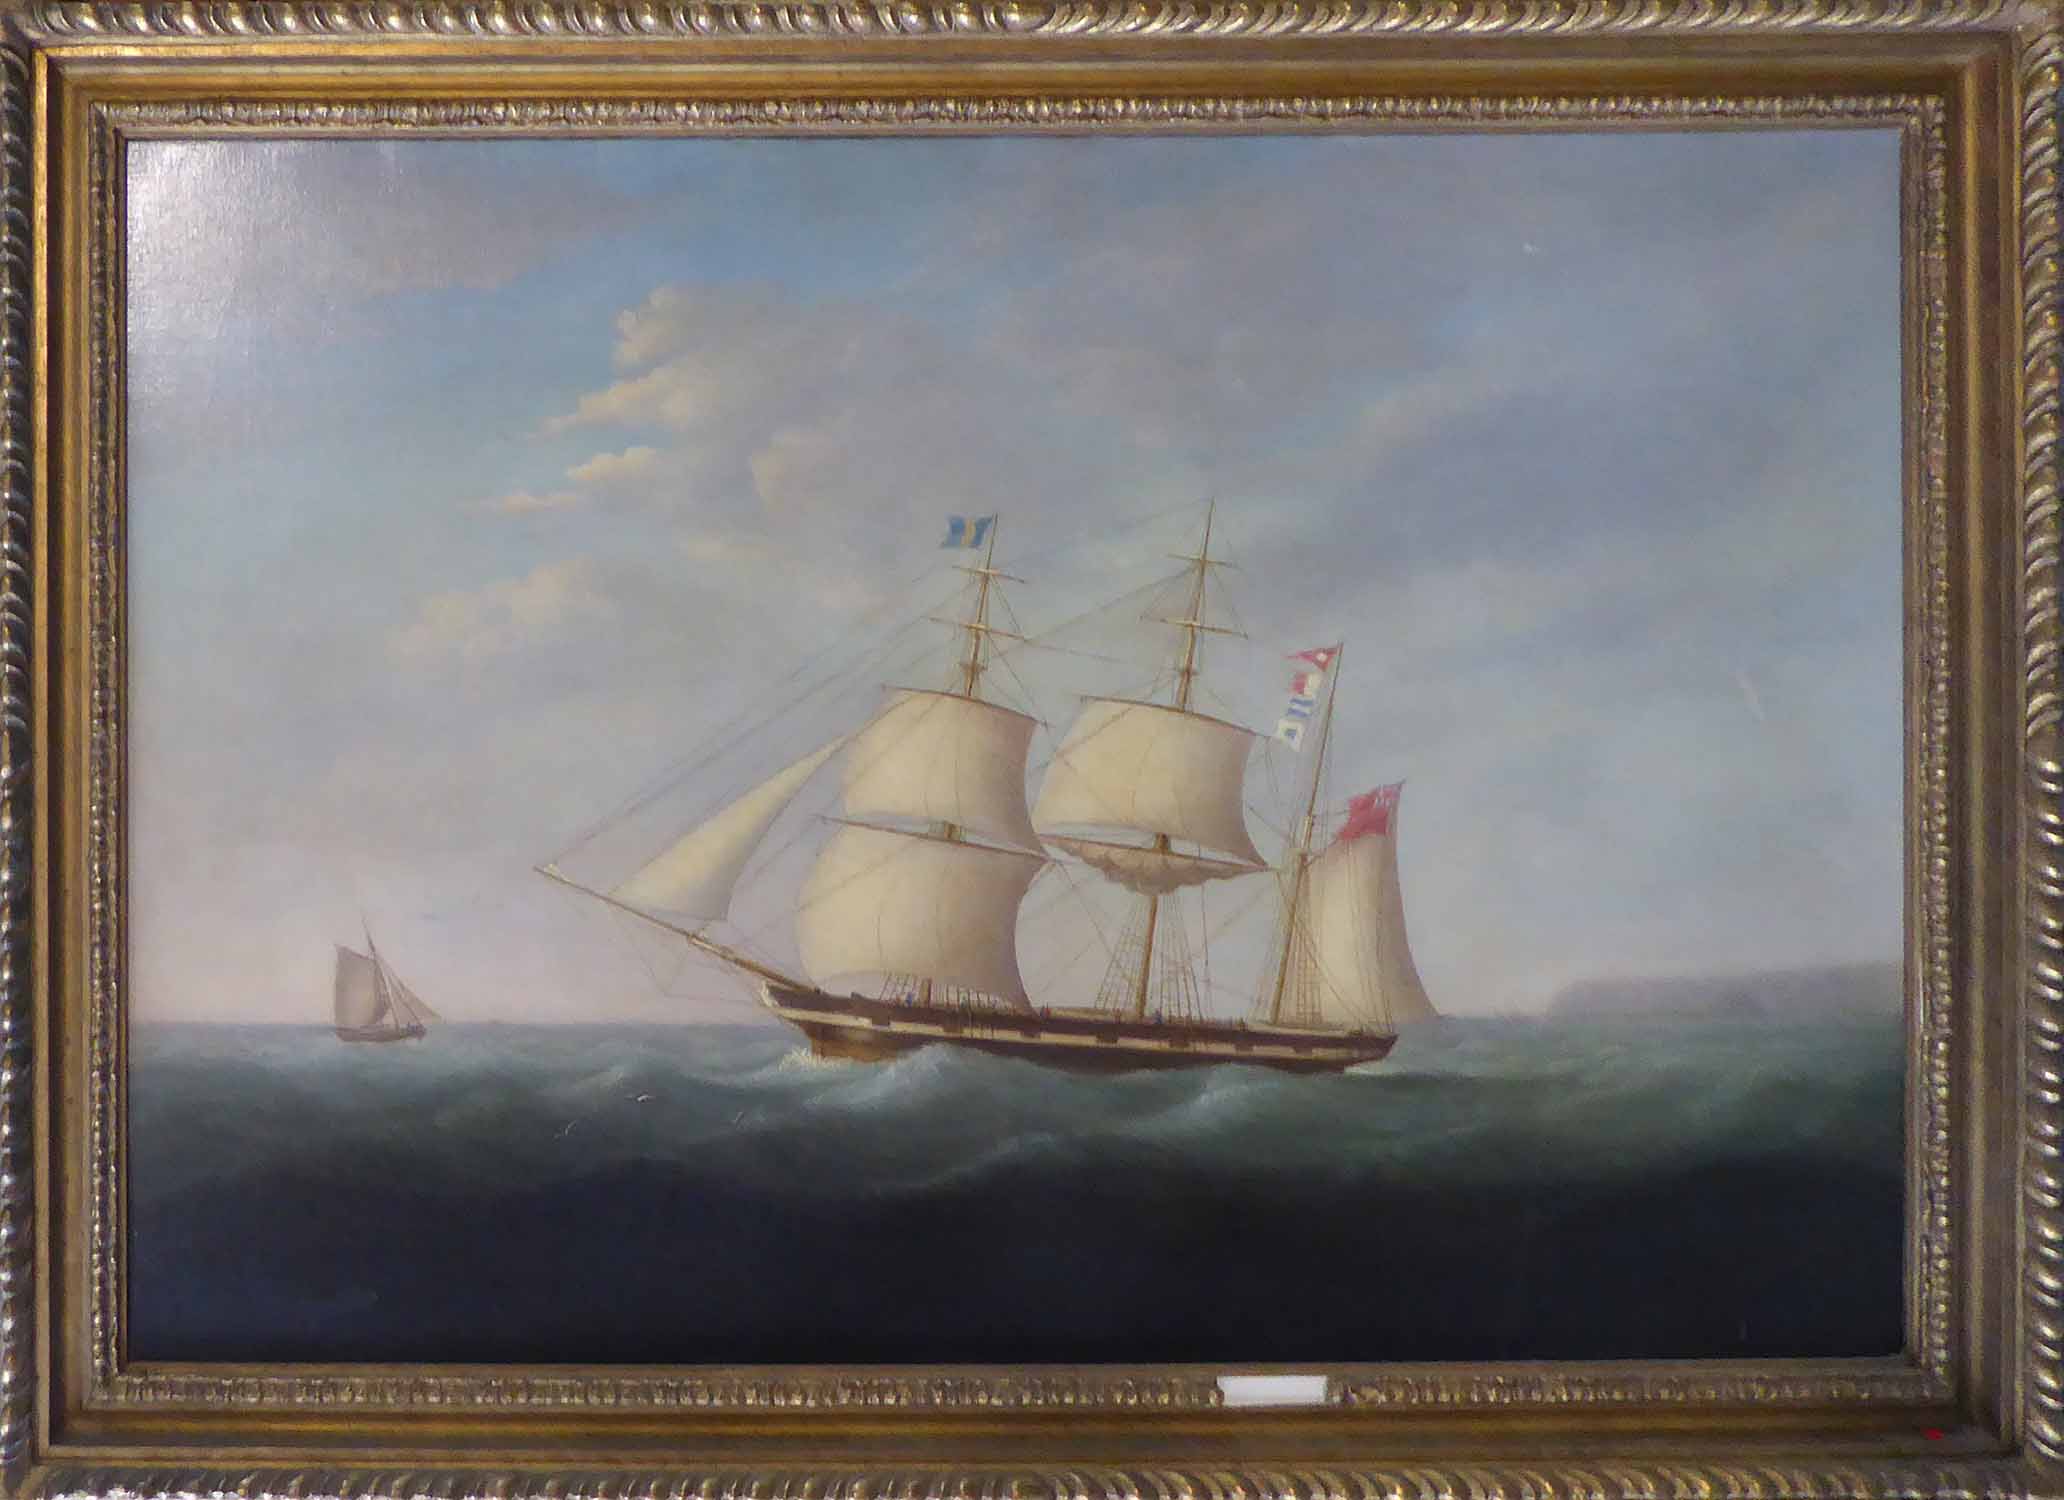 HALLETT 'Tall Ship', oil on canvas, signed lower left, 65cm x 95cm, framed.